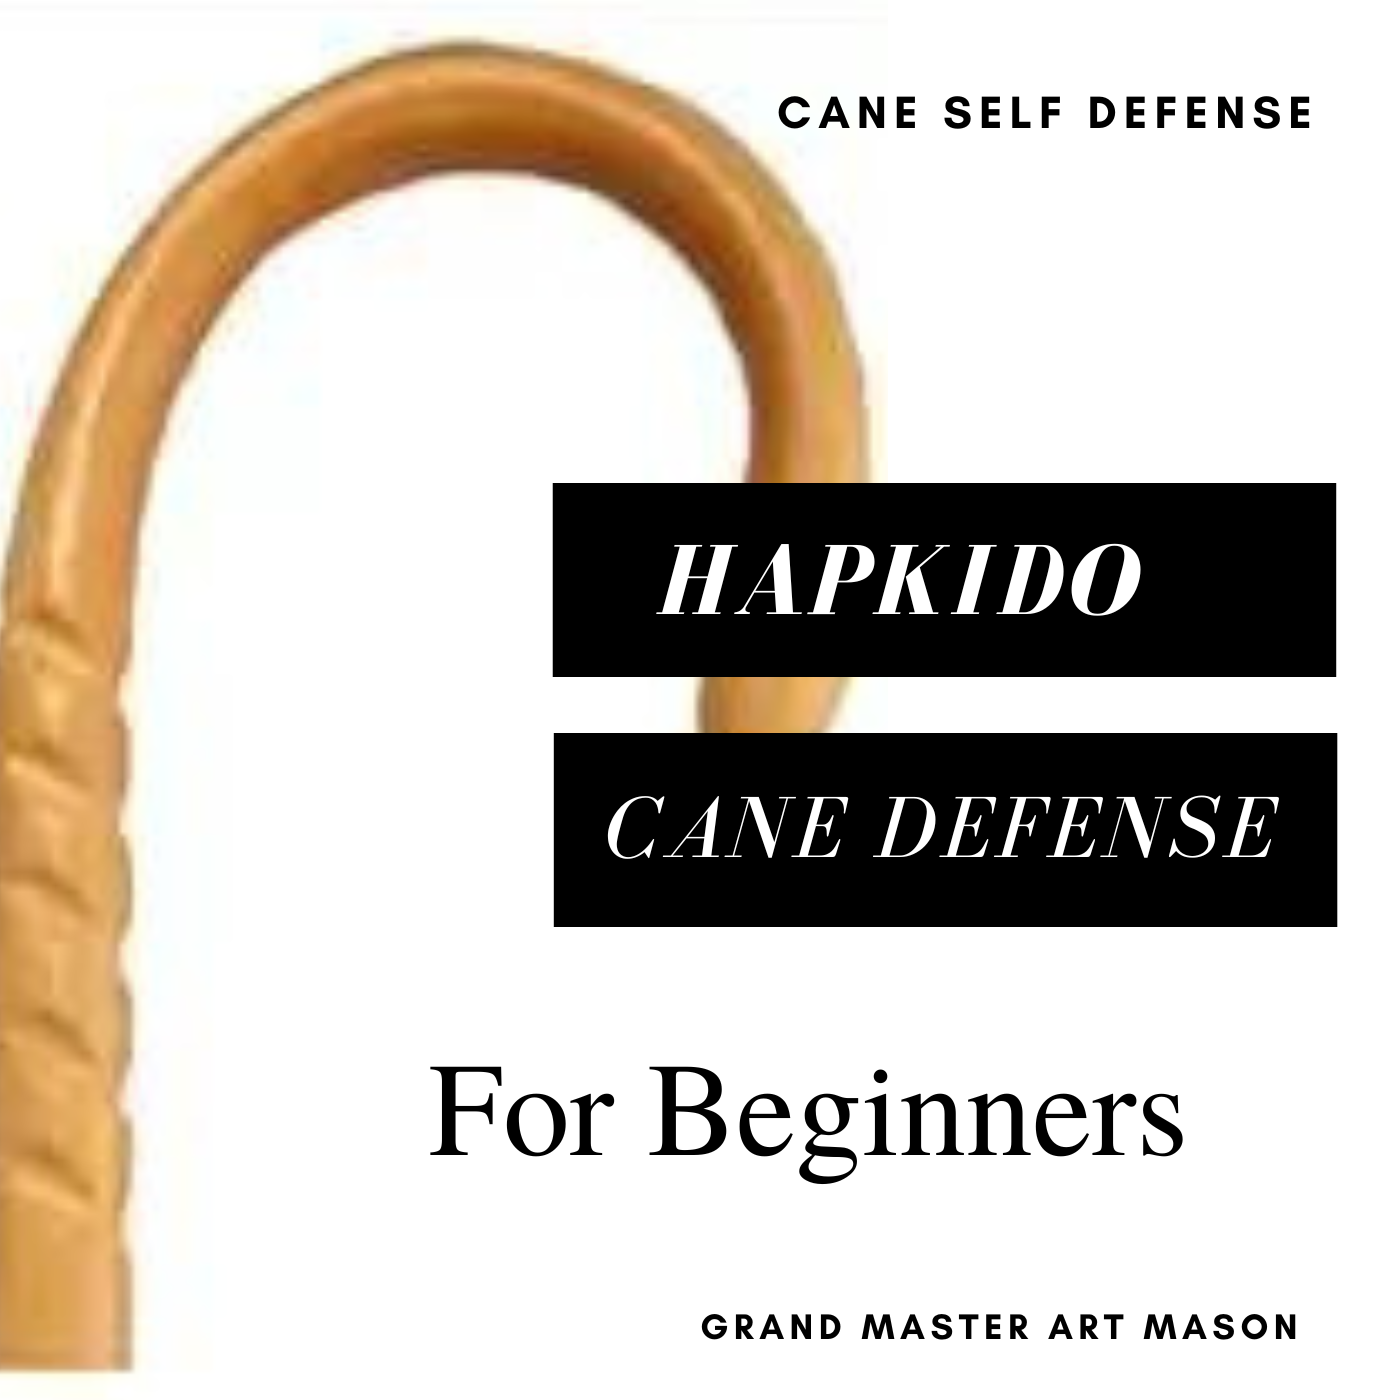 * Hapkido Cane Defense System: